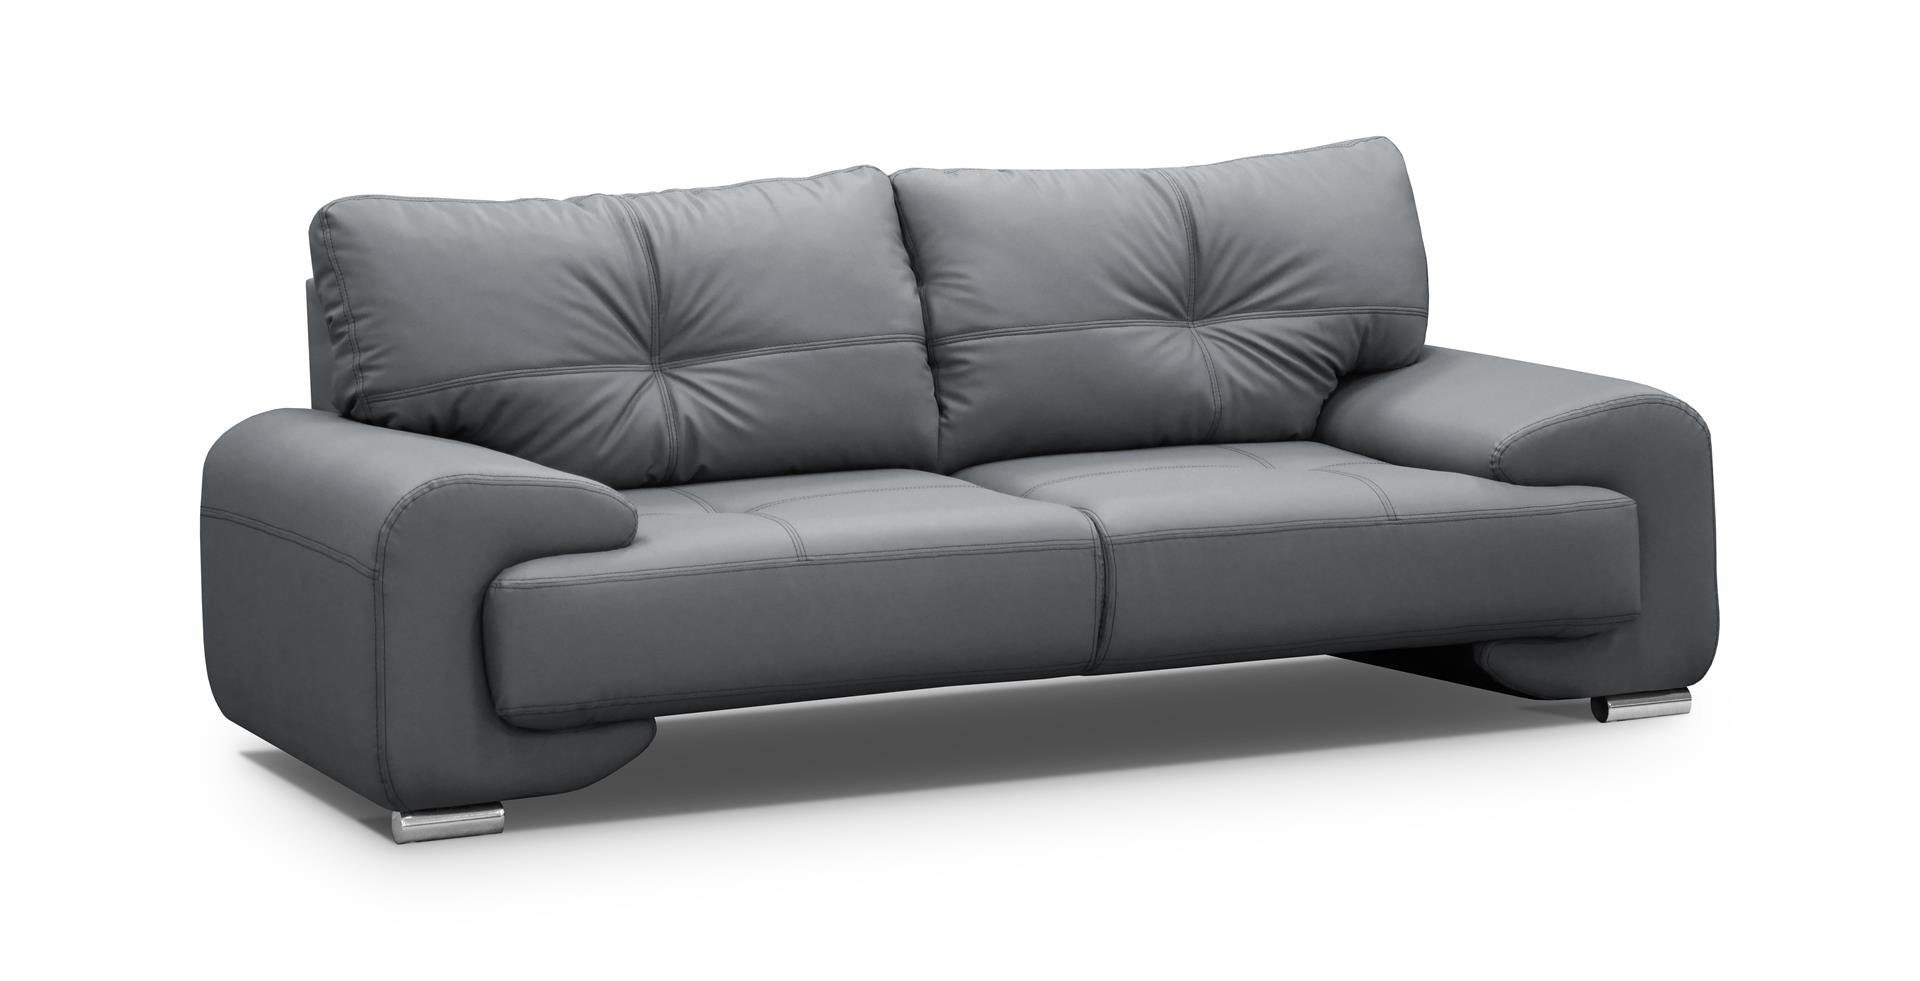 Beautysofa Sofa Dreisitzer Sofa Couch OMEGA Neu Grau (dolaro 04)